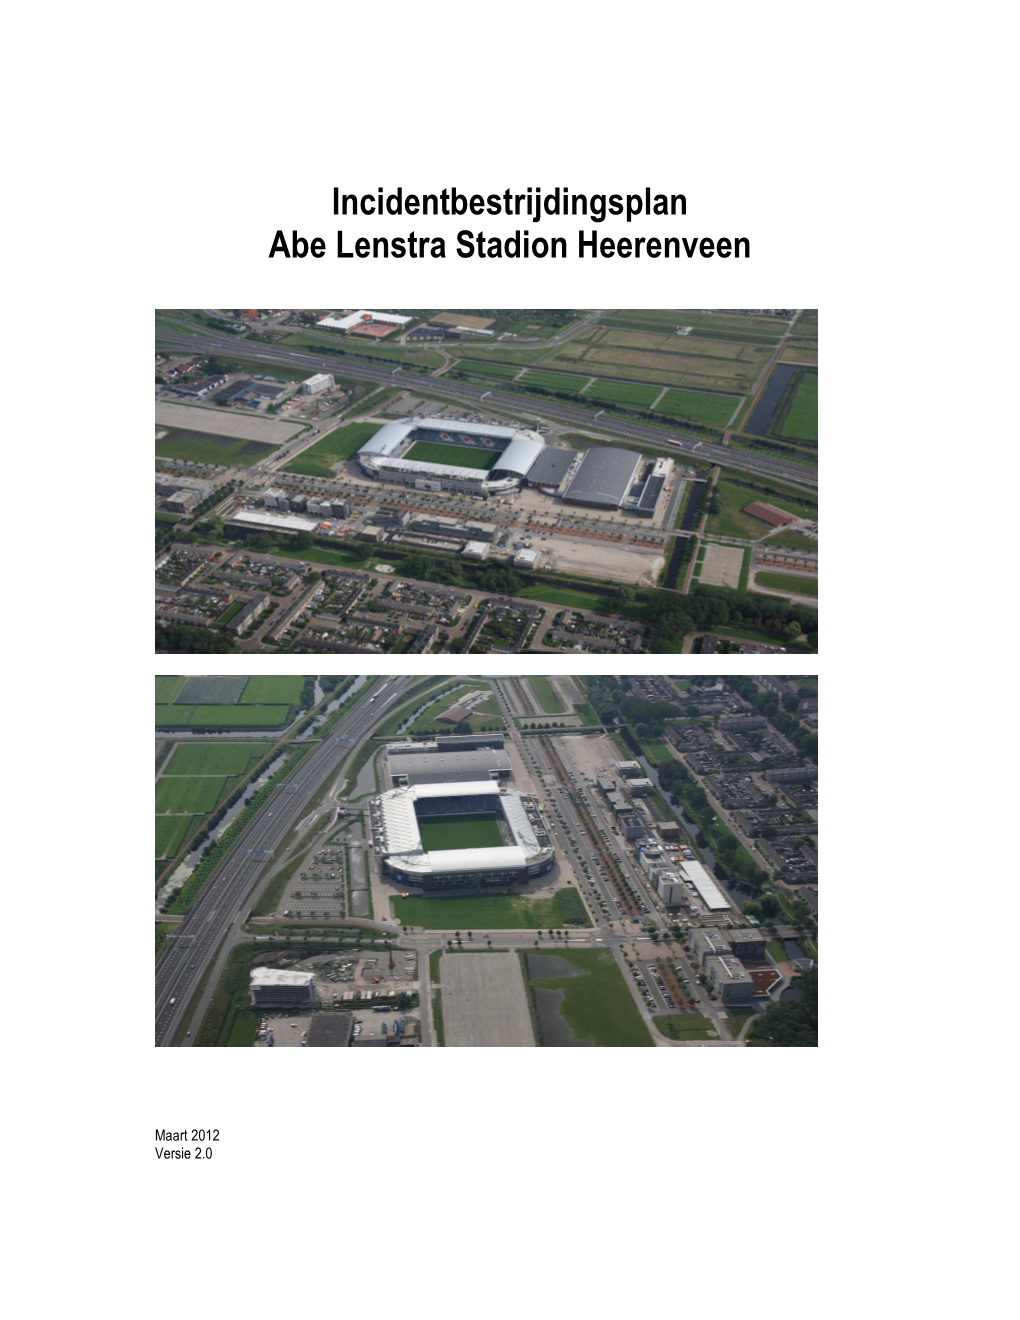 Incidentbestrijdingsplan Abe Lenstra Stadion Heerenveen